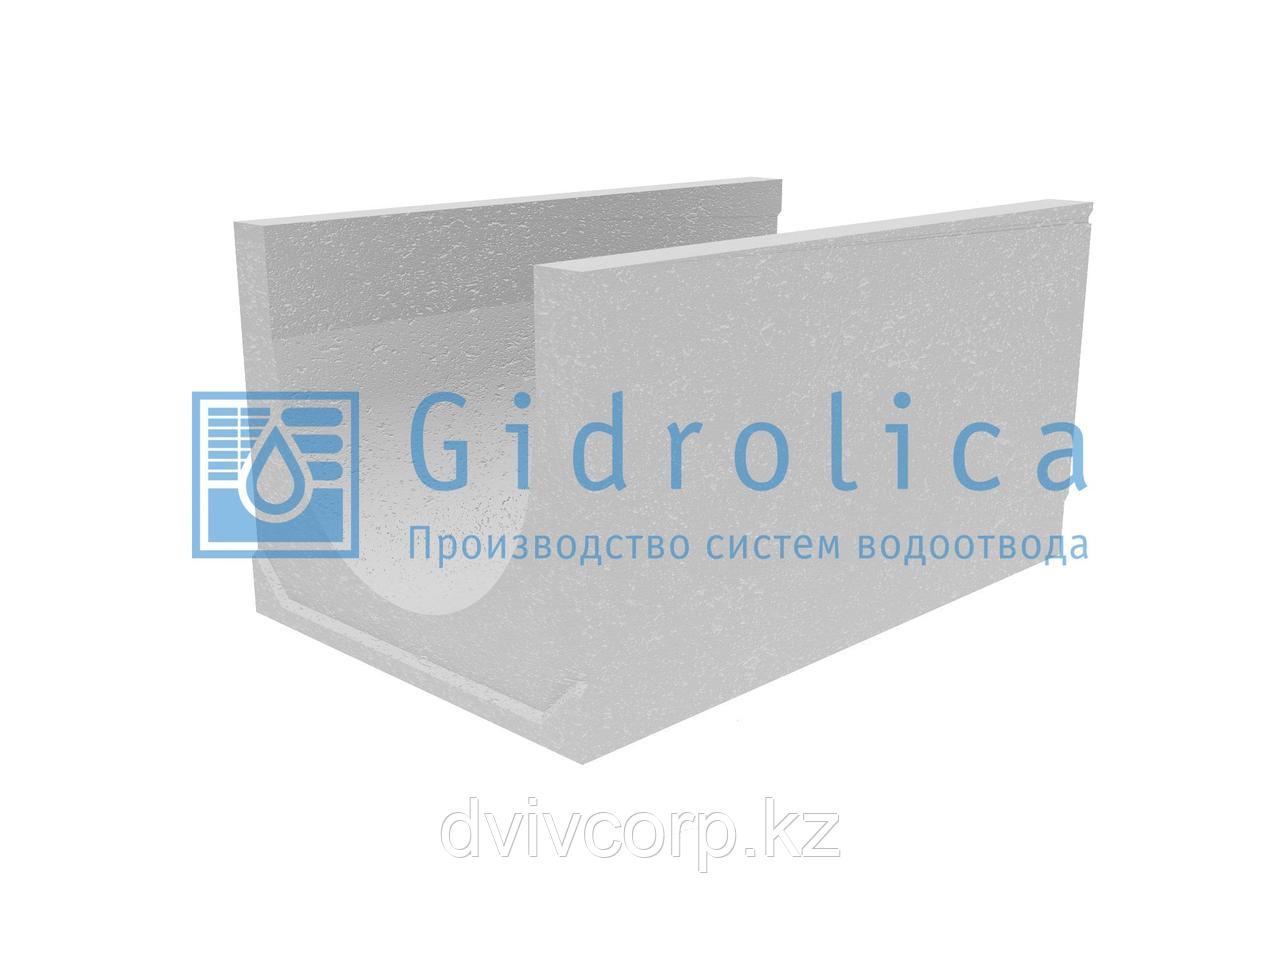 Лоток водоотводный бетонный коробчатый (СО-500мм), с уклоном 0,5%  КU у100.65(50).53,5(44,5) - BGU-XL, № 17